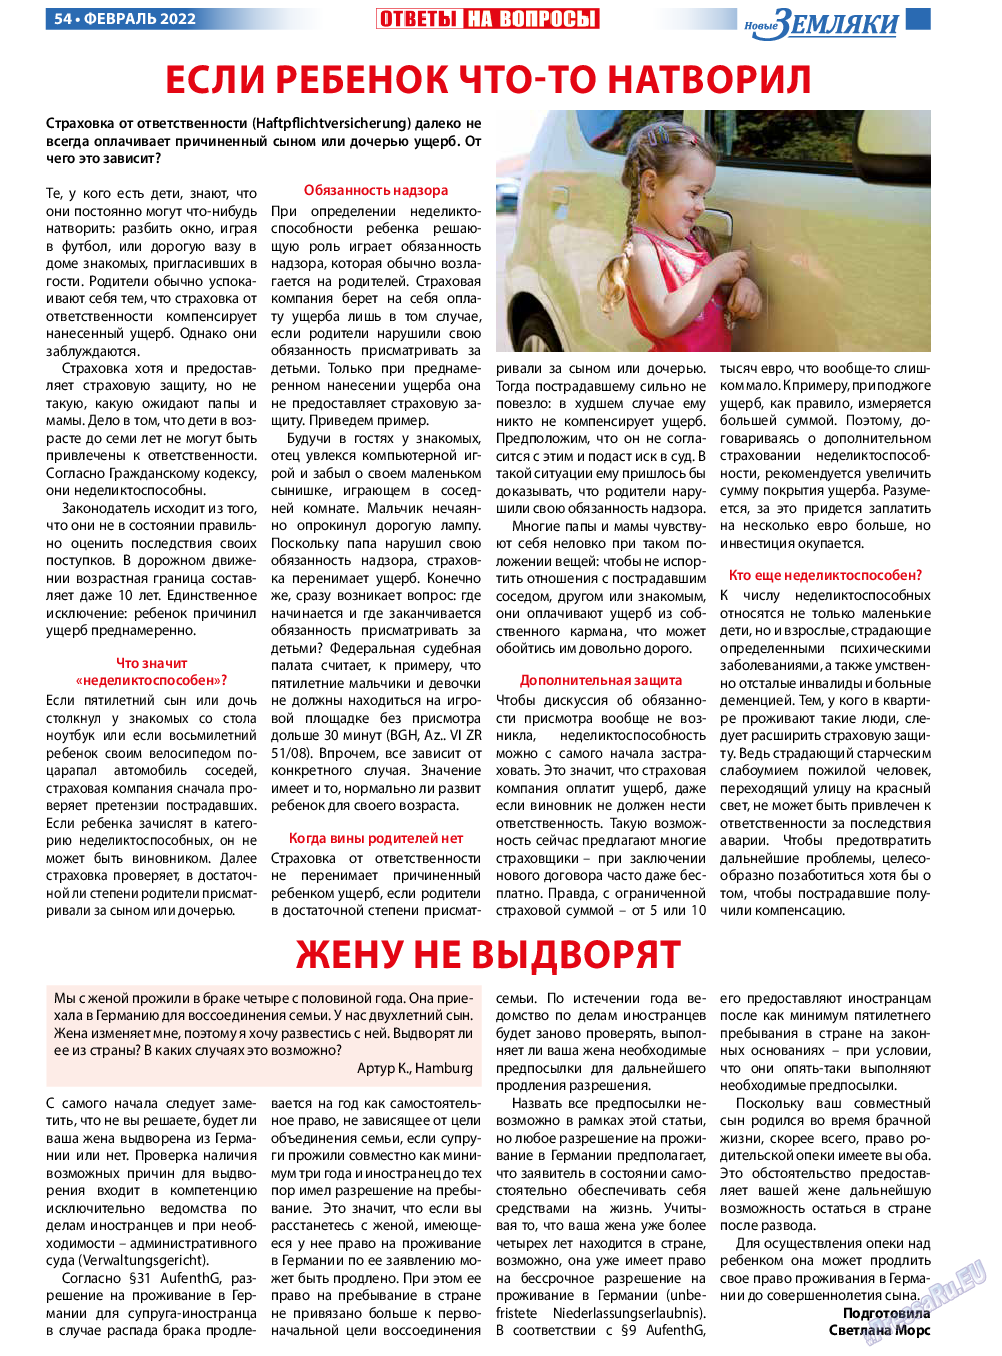 Новые Земляки, газета. 2022 №2 стр.54